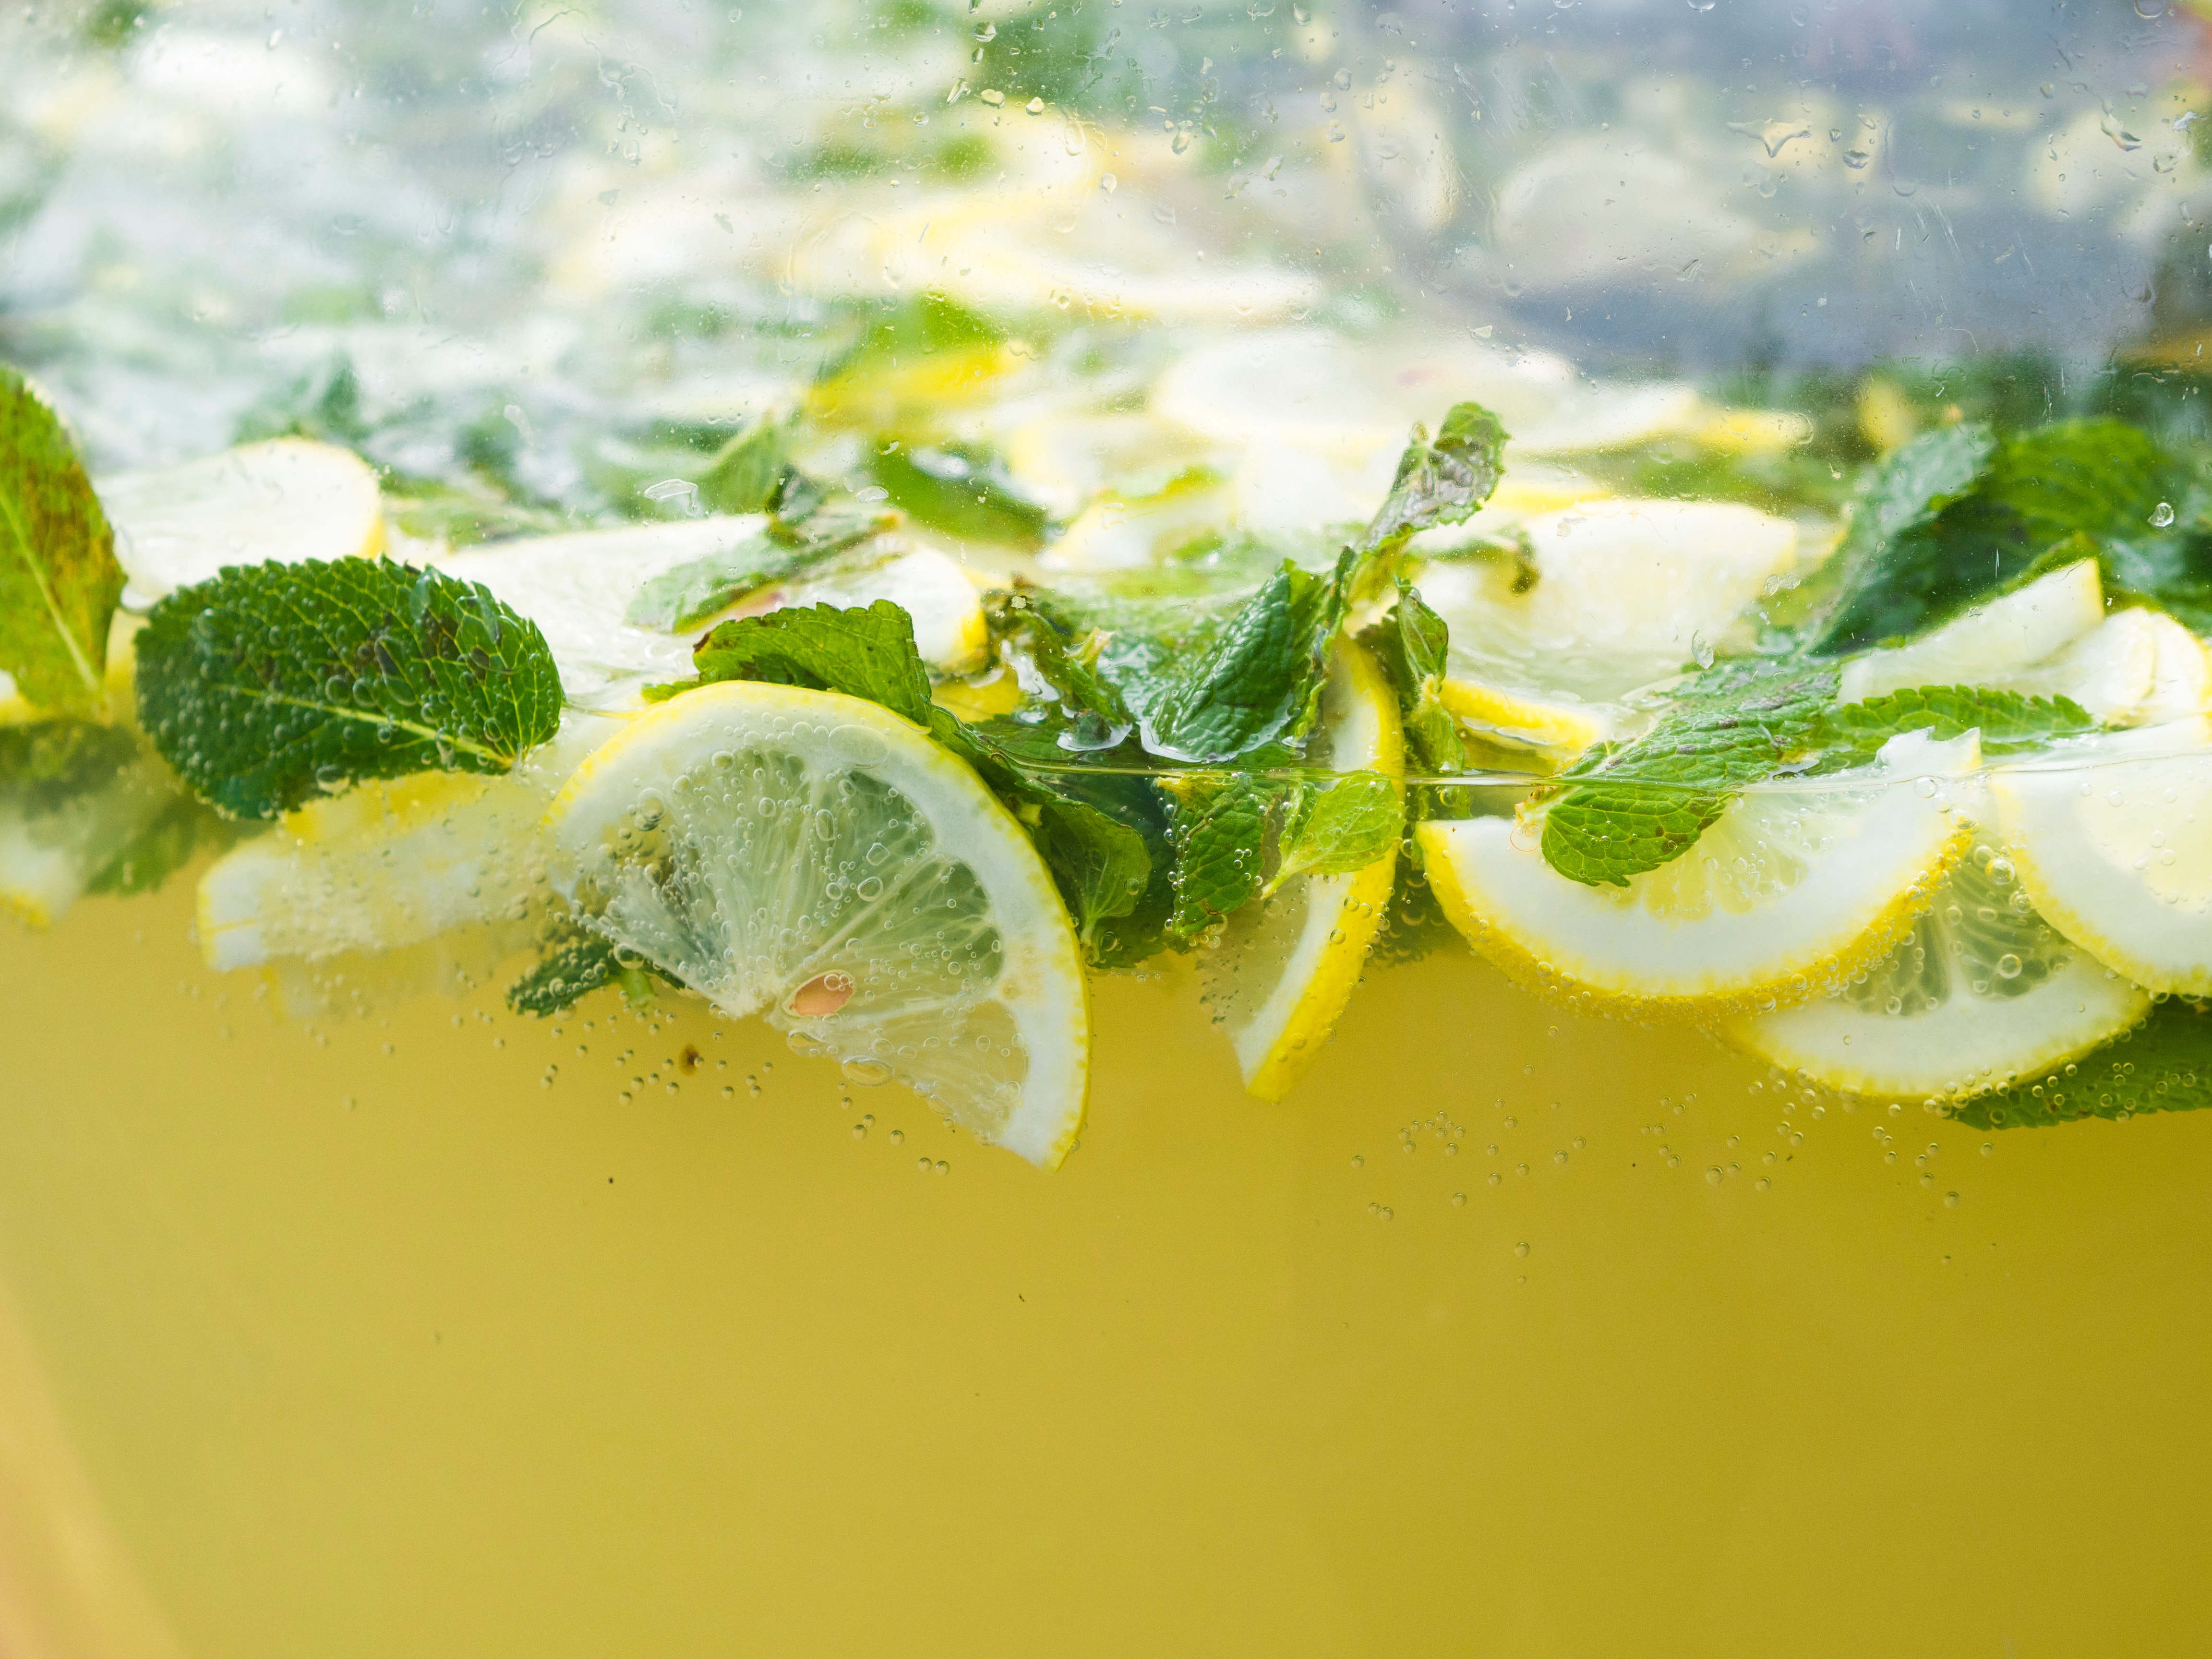 Agua fresca de limón con hierbabuena!